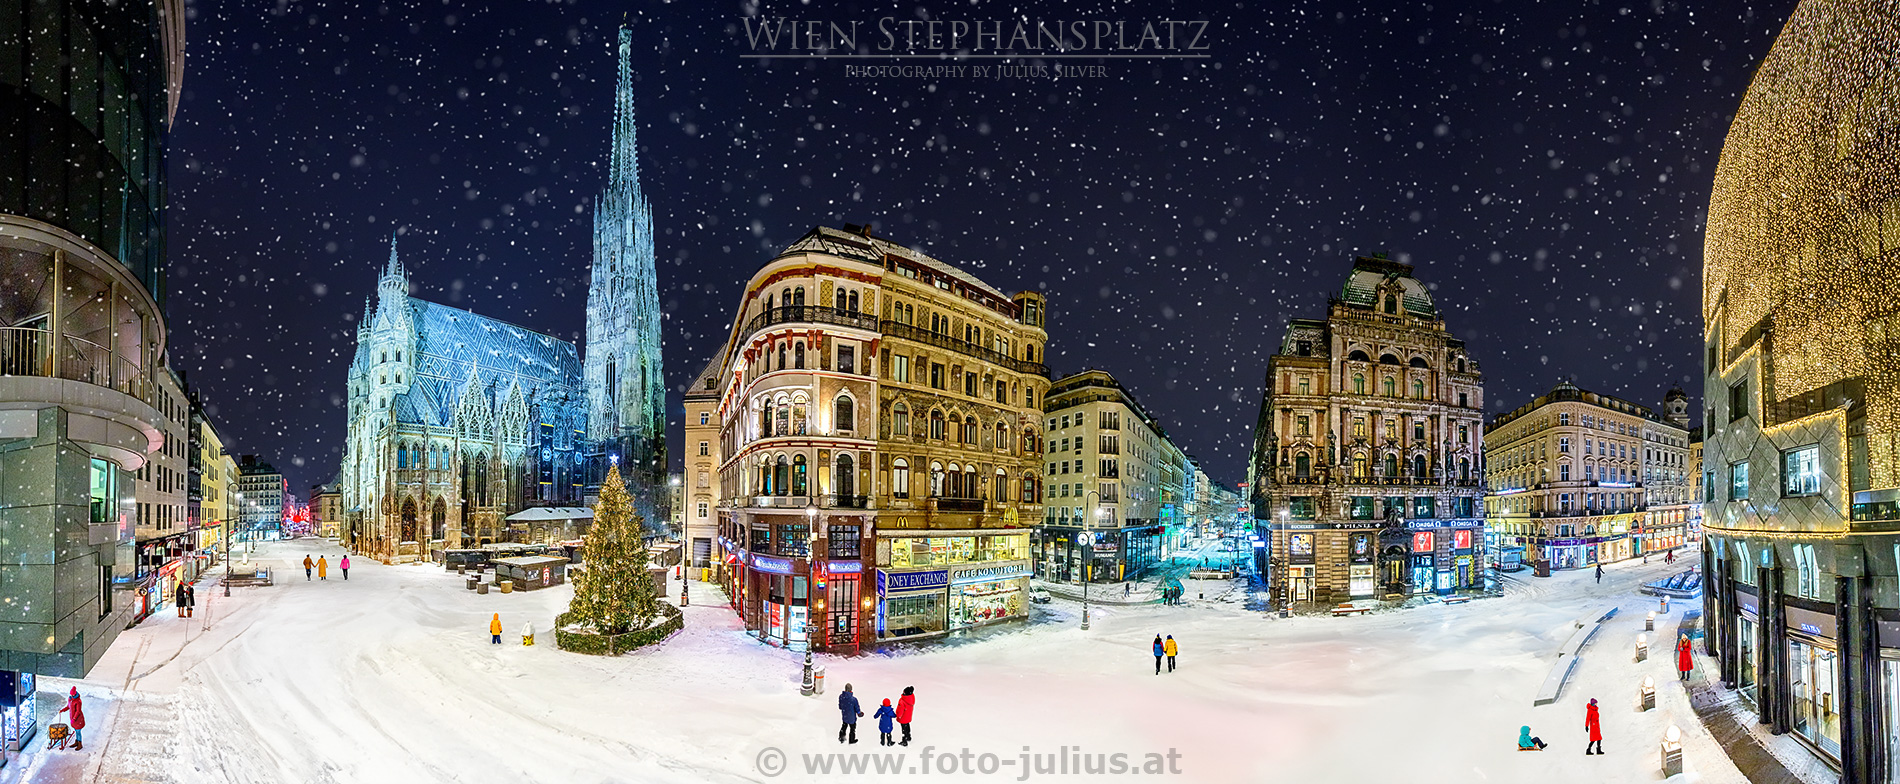 W6940a_Wien_Stephansplatz_Winter.jpg, 892kB